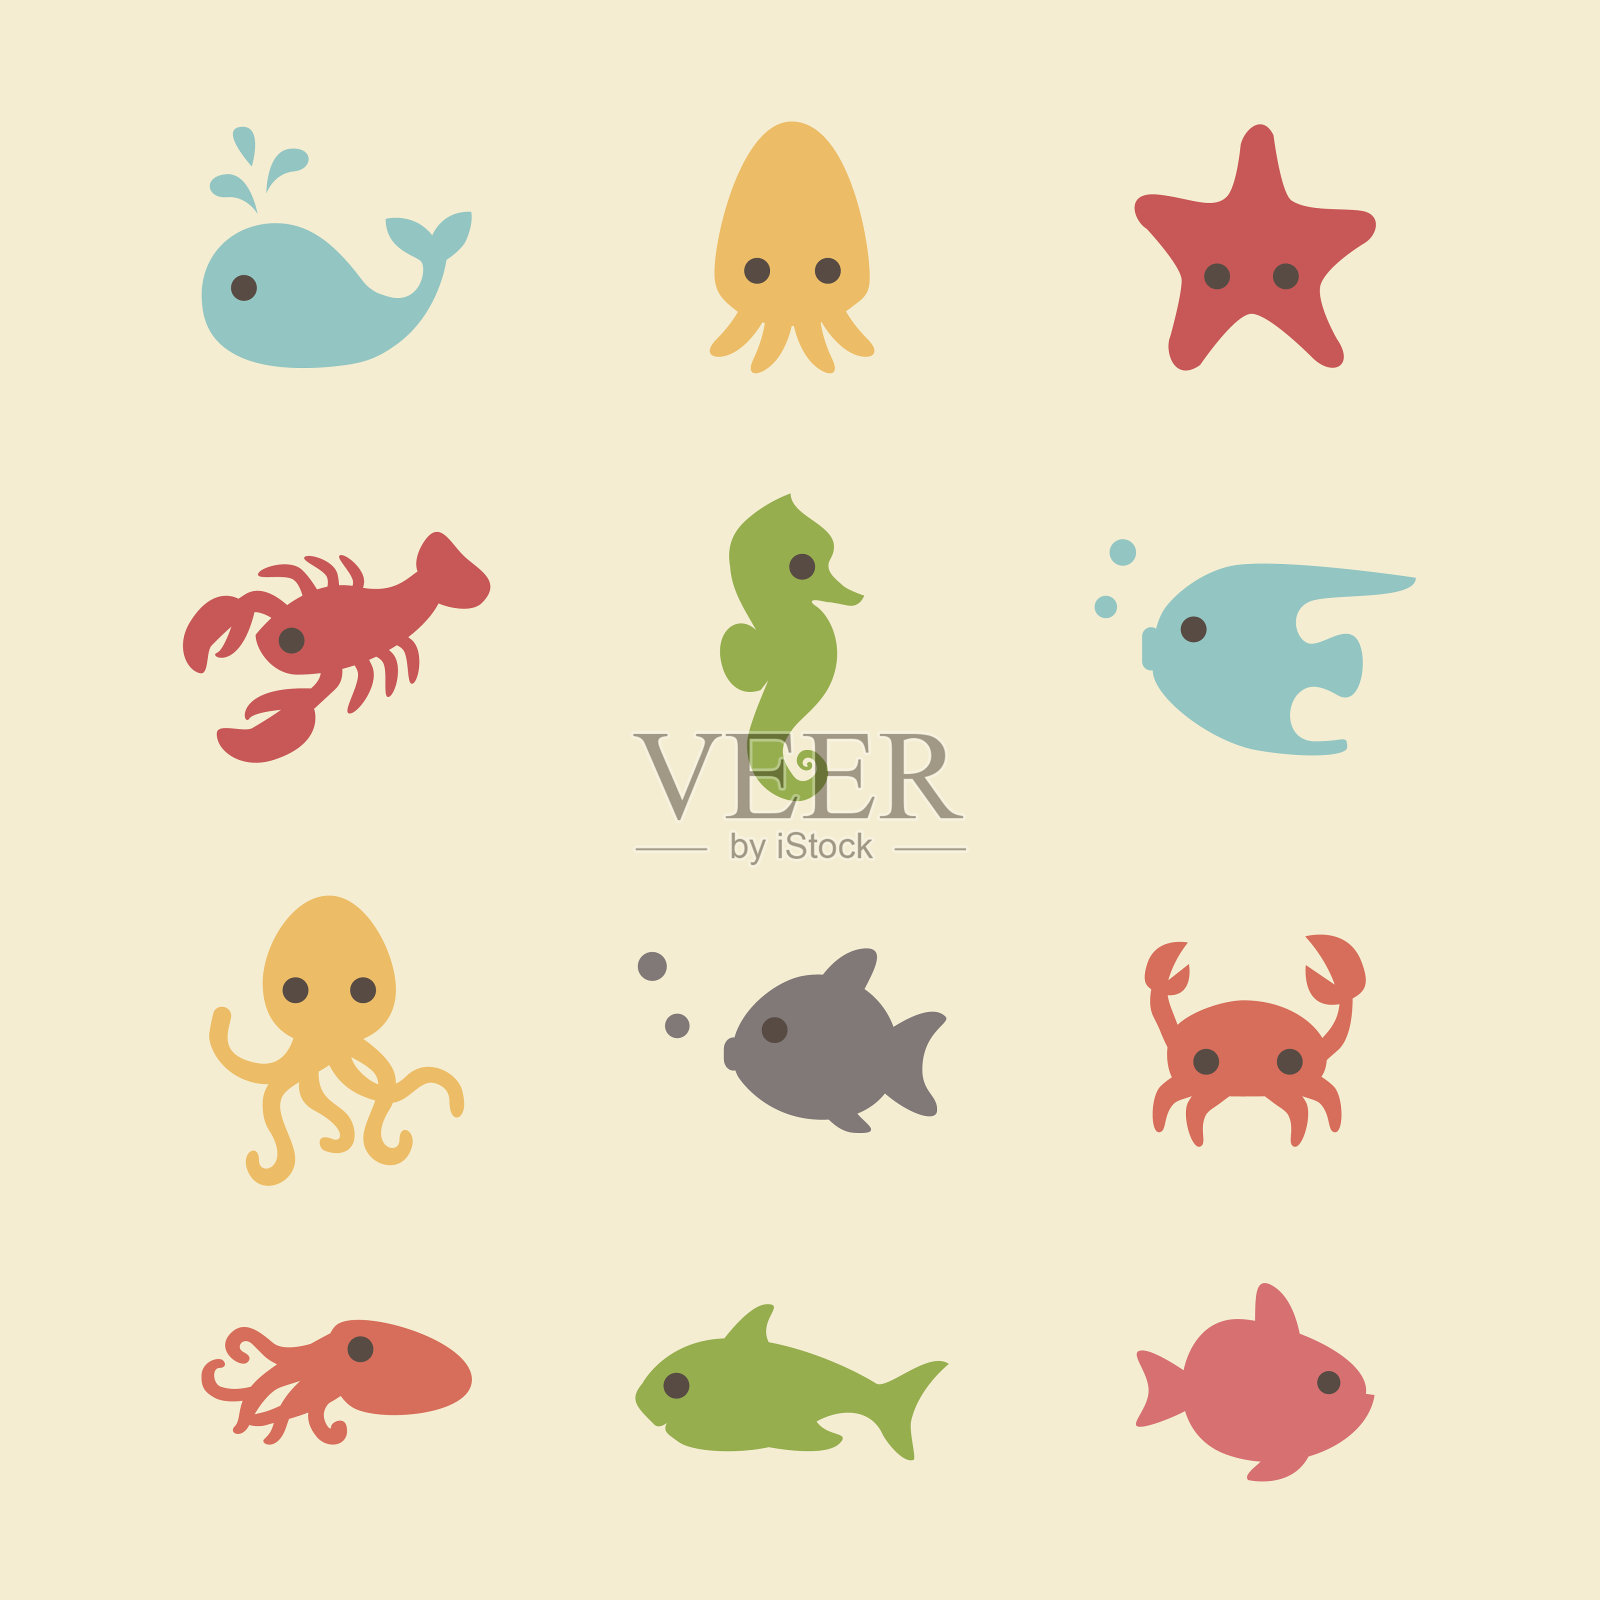 可爱简单的海洋生物插画图片素材